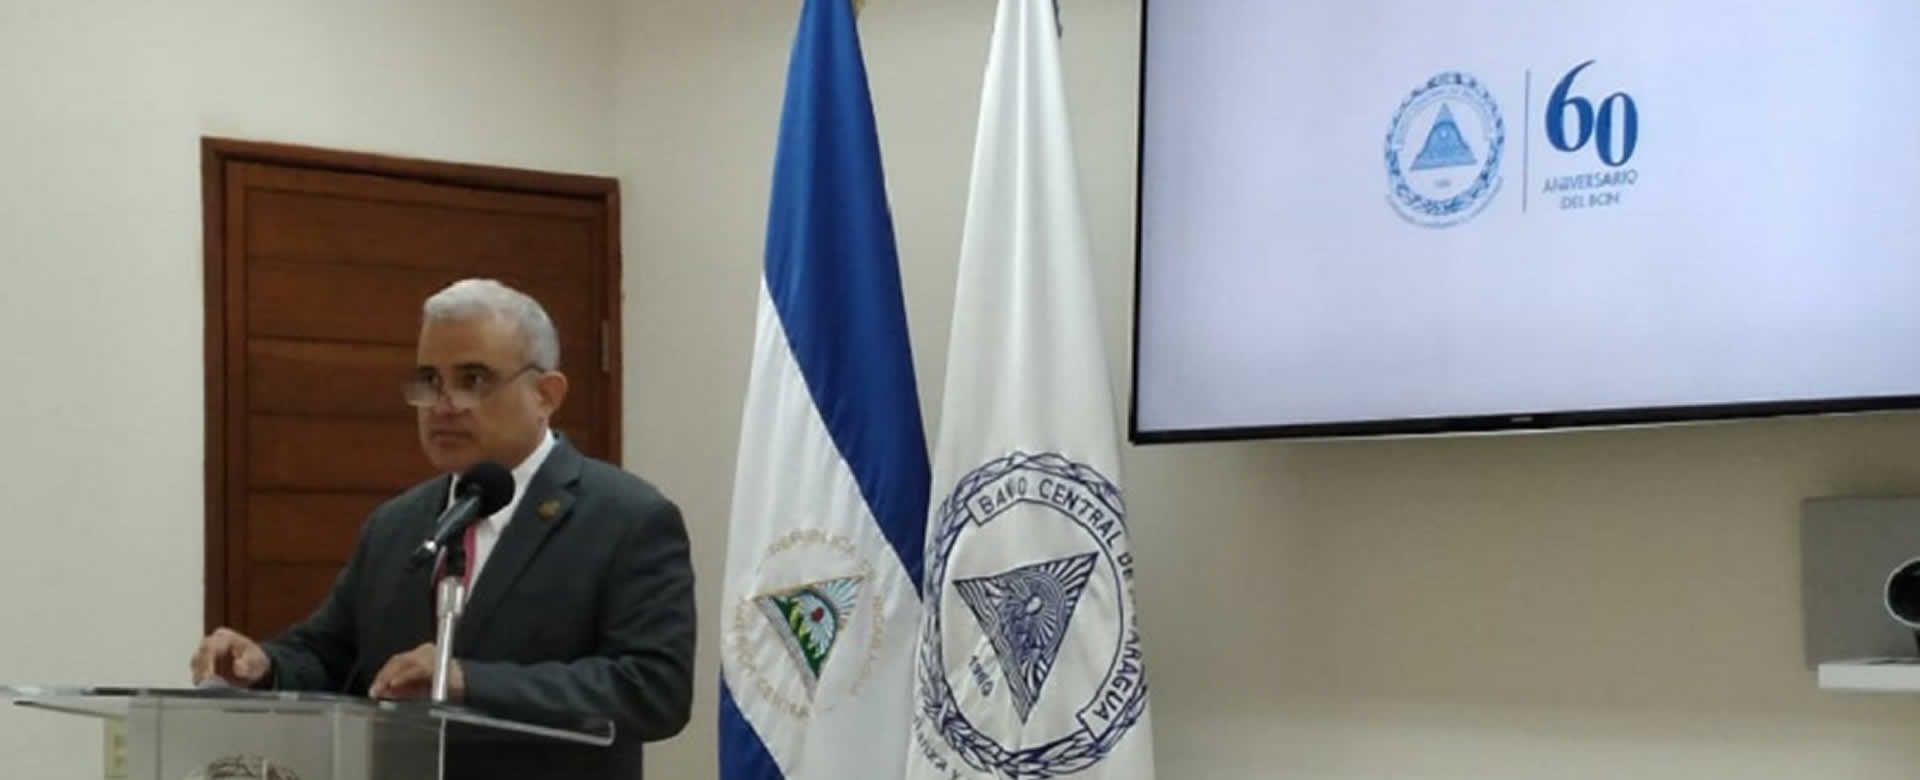 Banco Central de Nicaragua celebrará su 60 aniversario